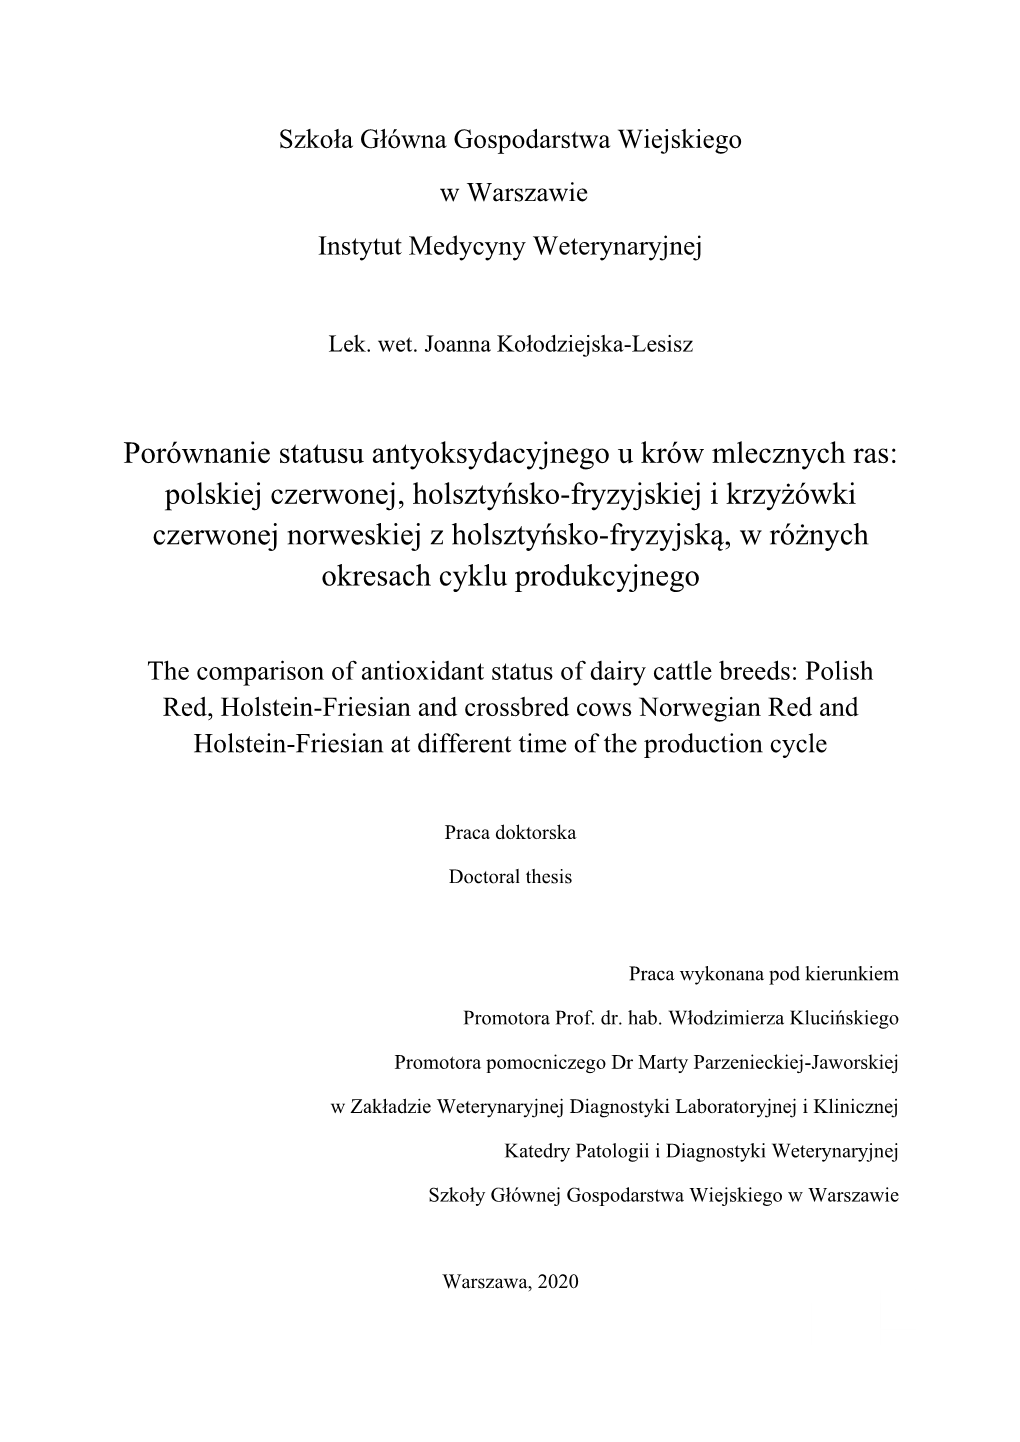 Porównanie Statusu Antyoksydacyjnego U Krów Mlecznych Ras: Polskiej Czerwonej, Holsztyńsko-Fryzyjskiej I Krzyżówki Czerwone